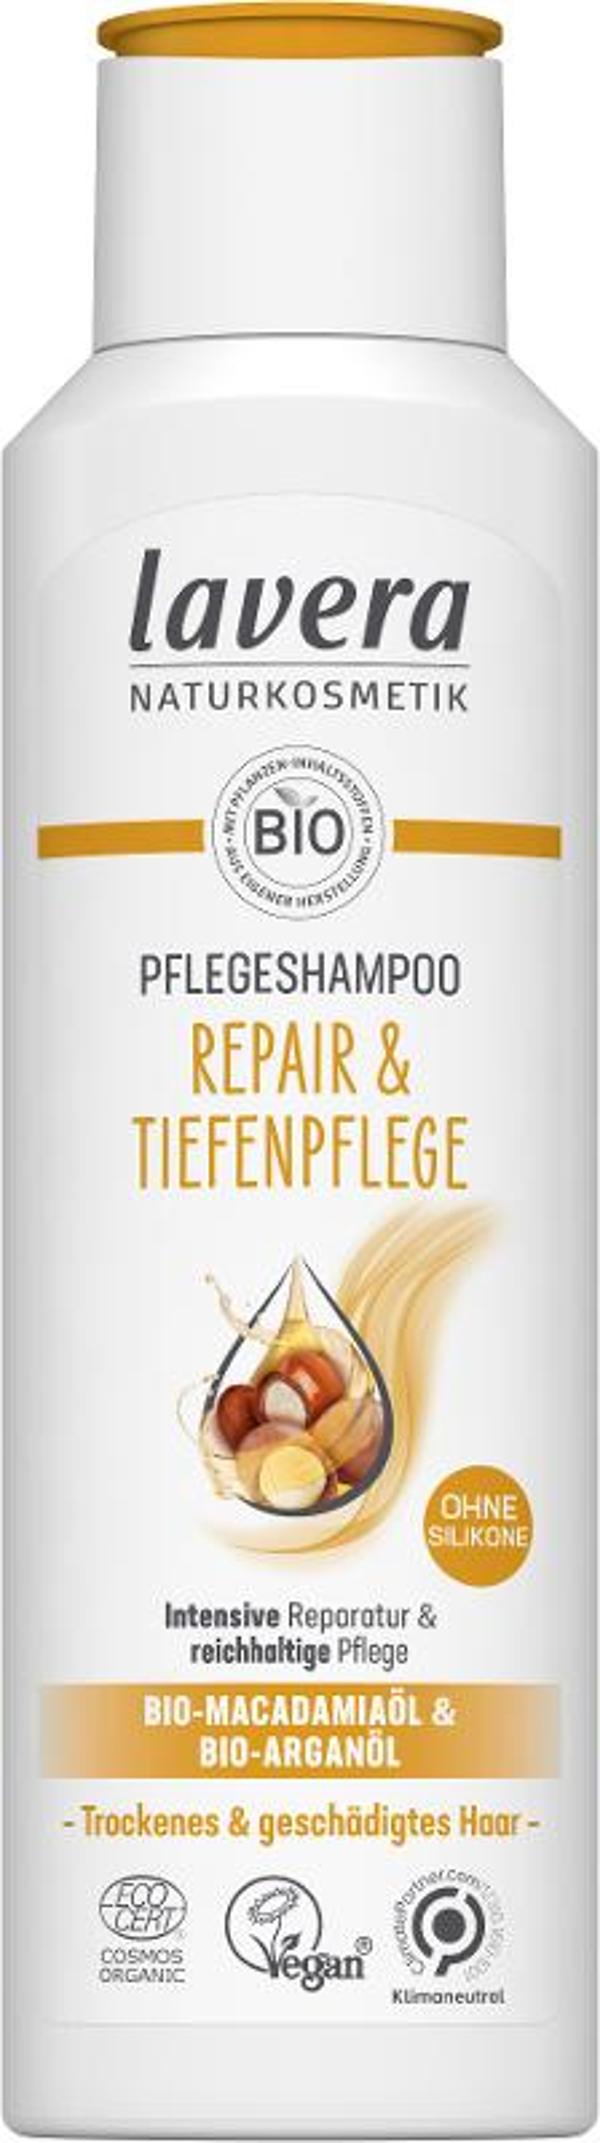 Produktfoto zu Lavera Shampoo Repair und Pflege 250ml